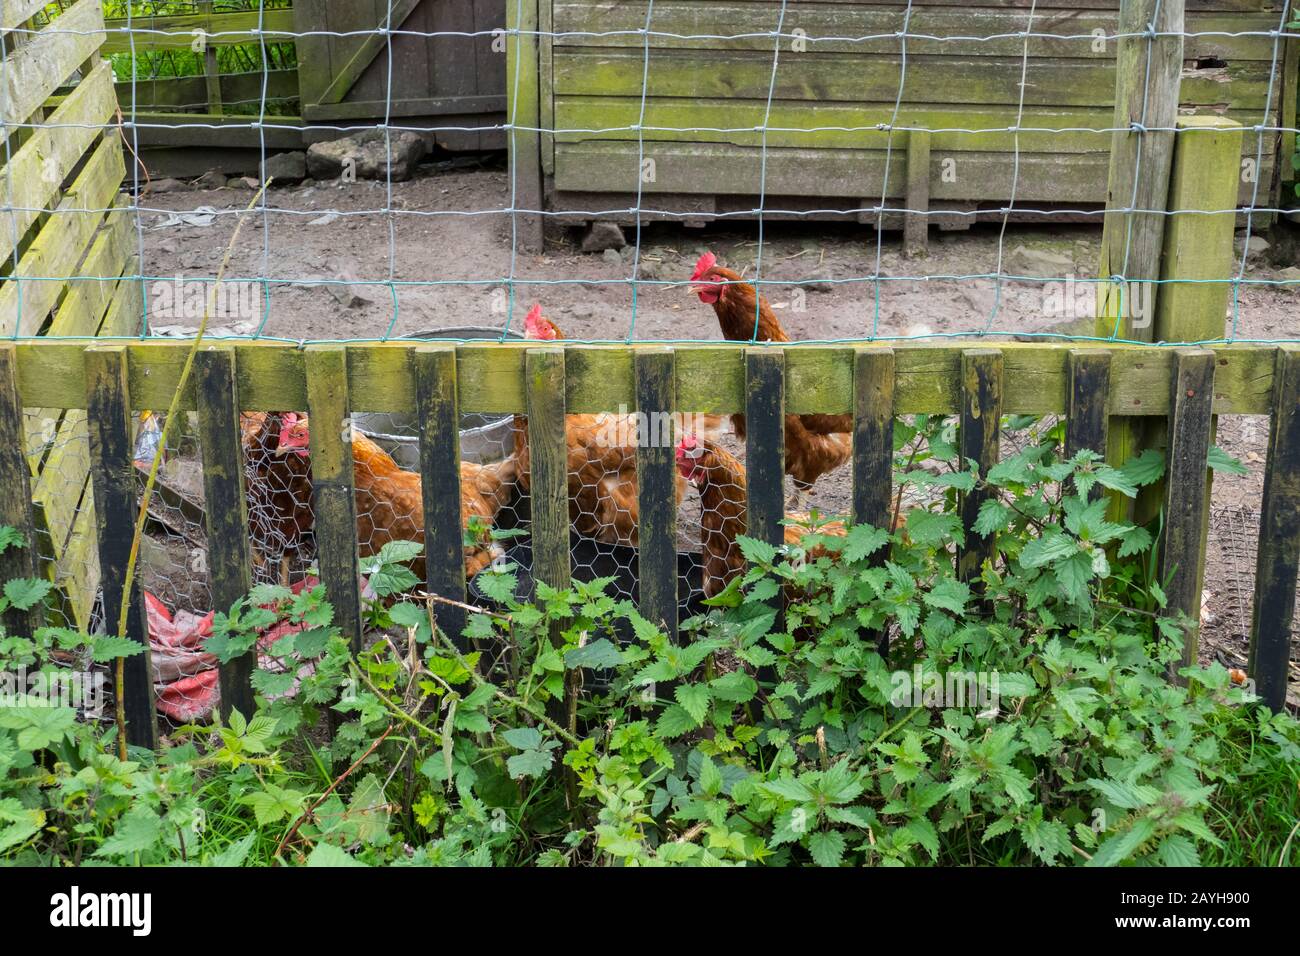 Hühner in einem Gehege, draußen in Bodenhaltung Stock Photo